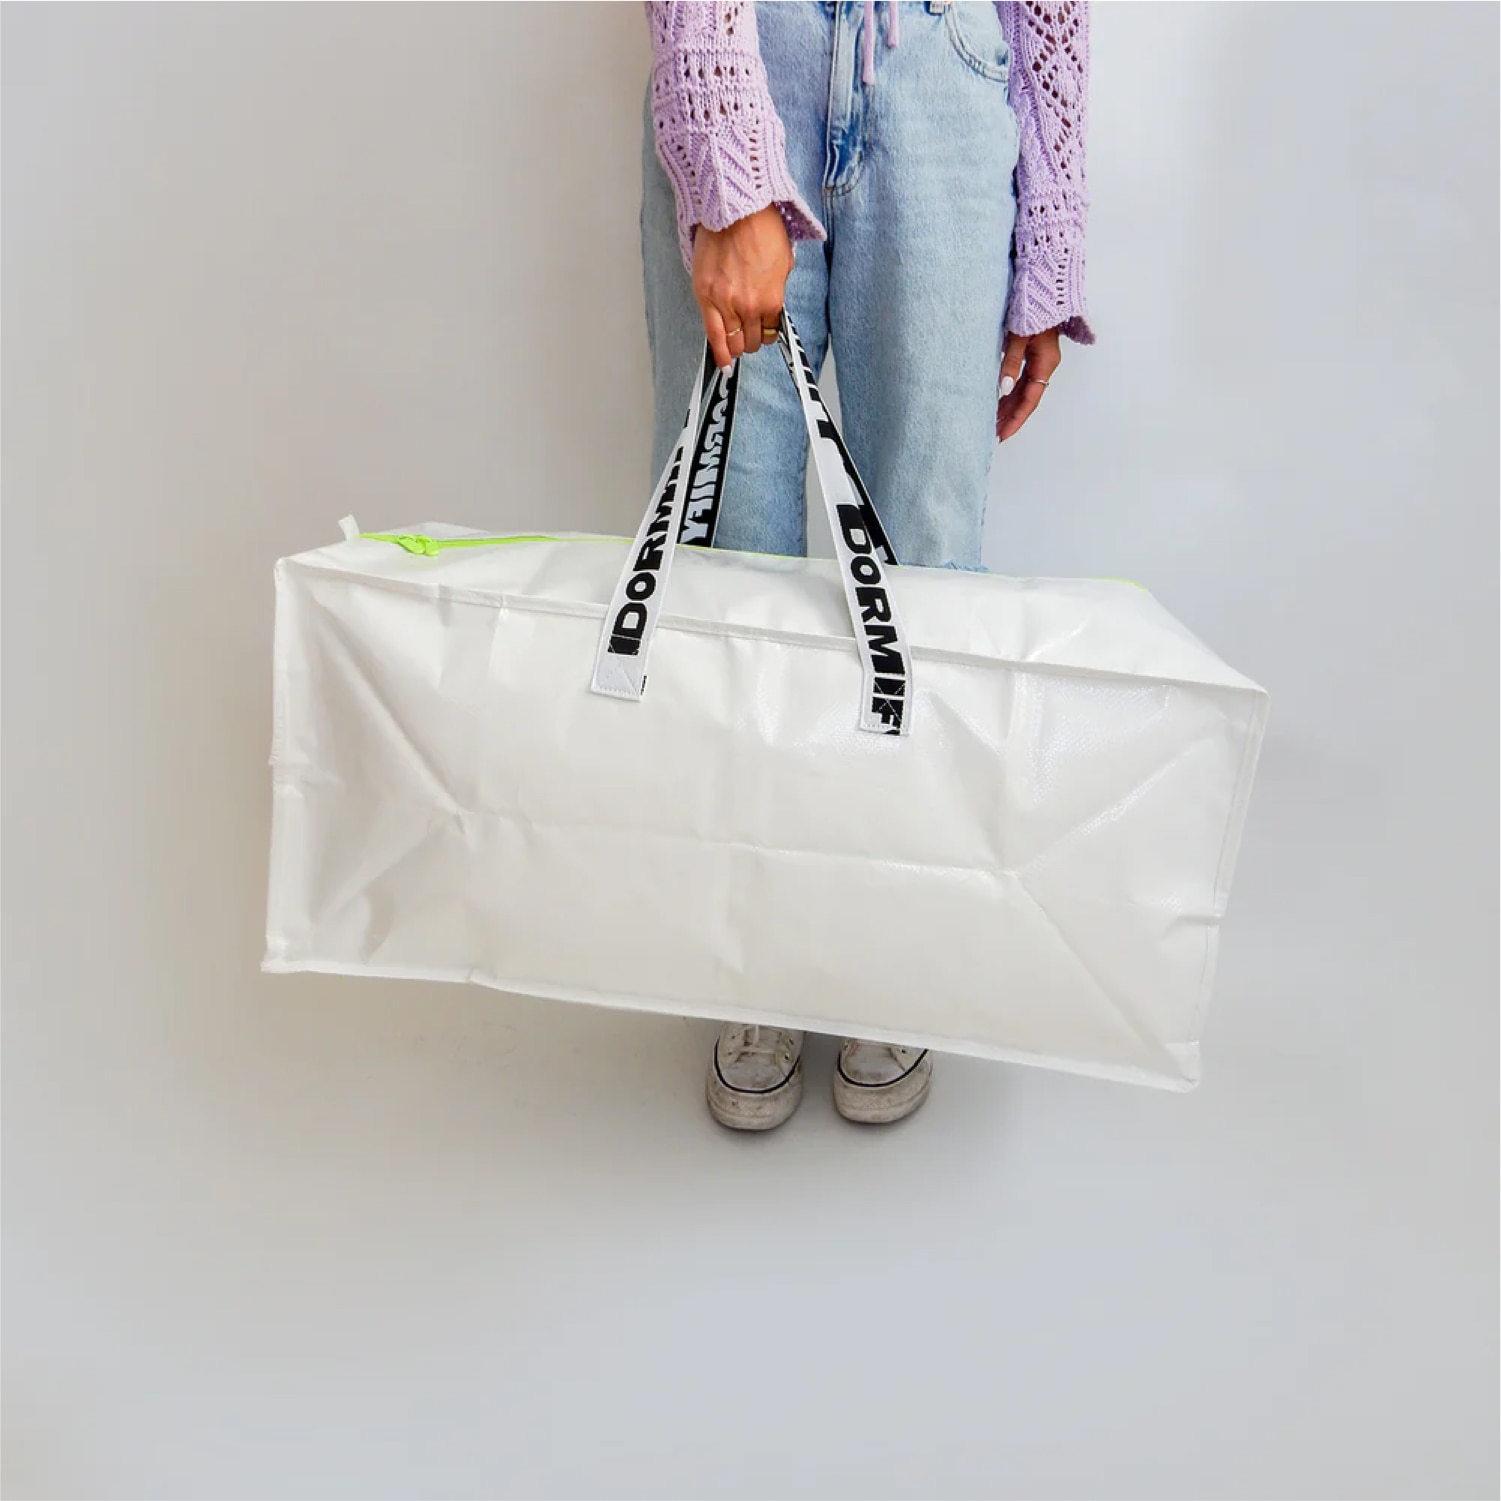 Dormify Storage Duffle Bag